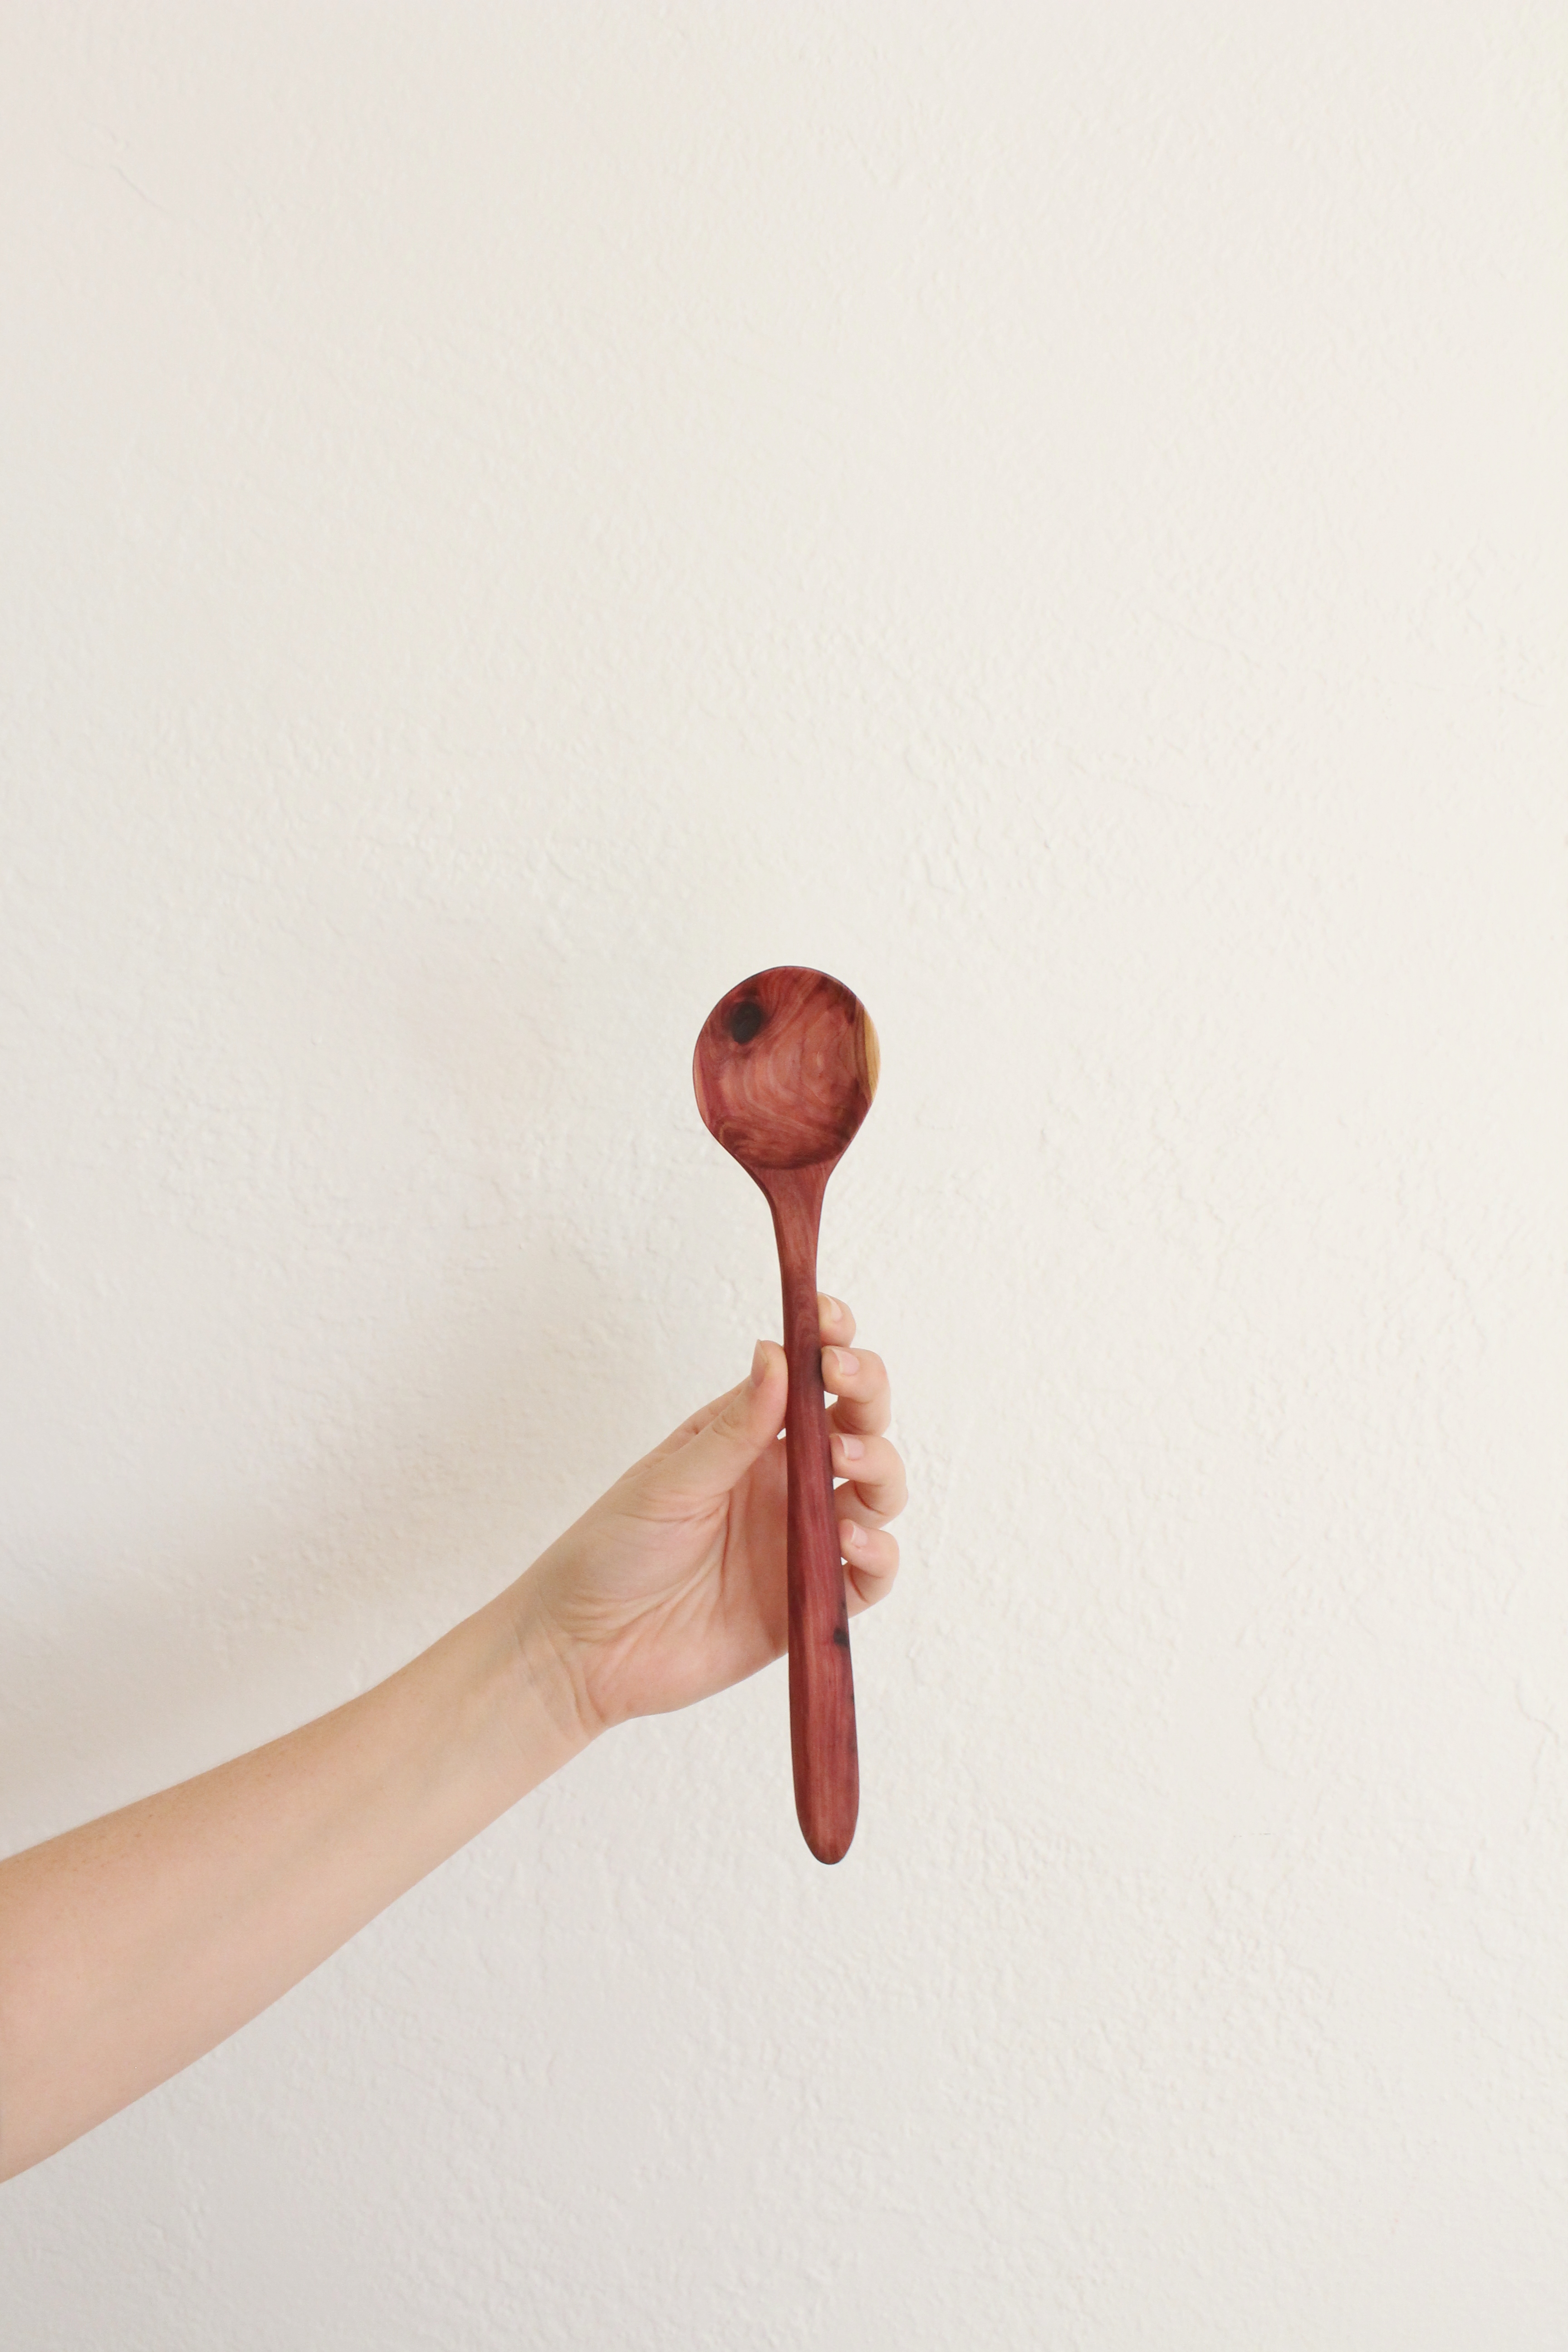 Eastern Red Cedar spoon carving